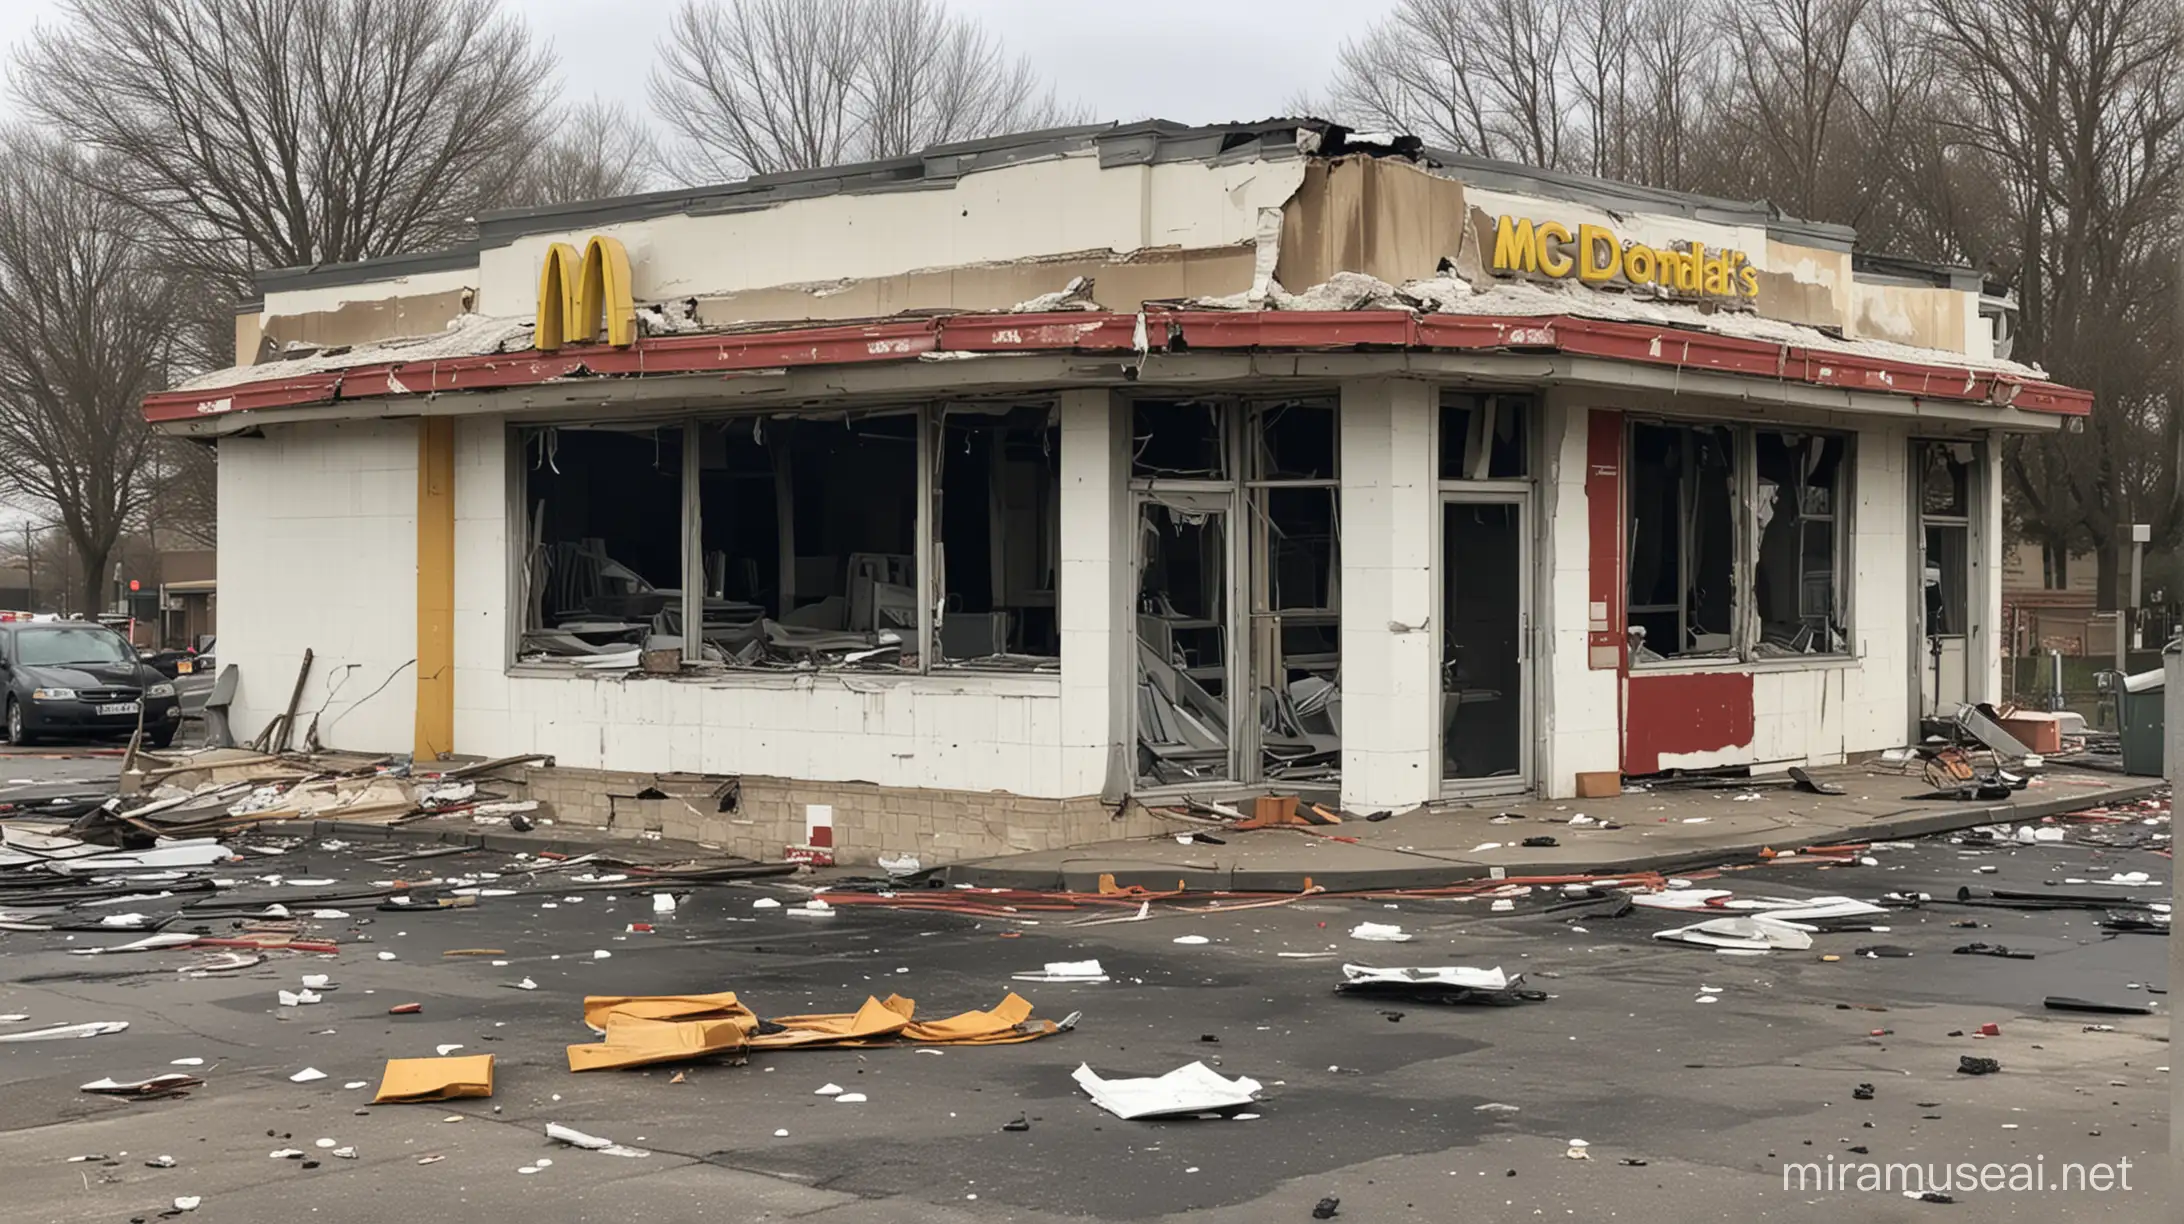 Abandoned McDonalds Derelict Fast Food Restaurant After Explosion